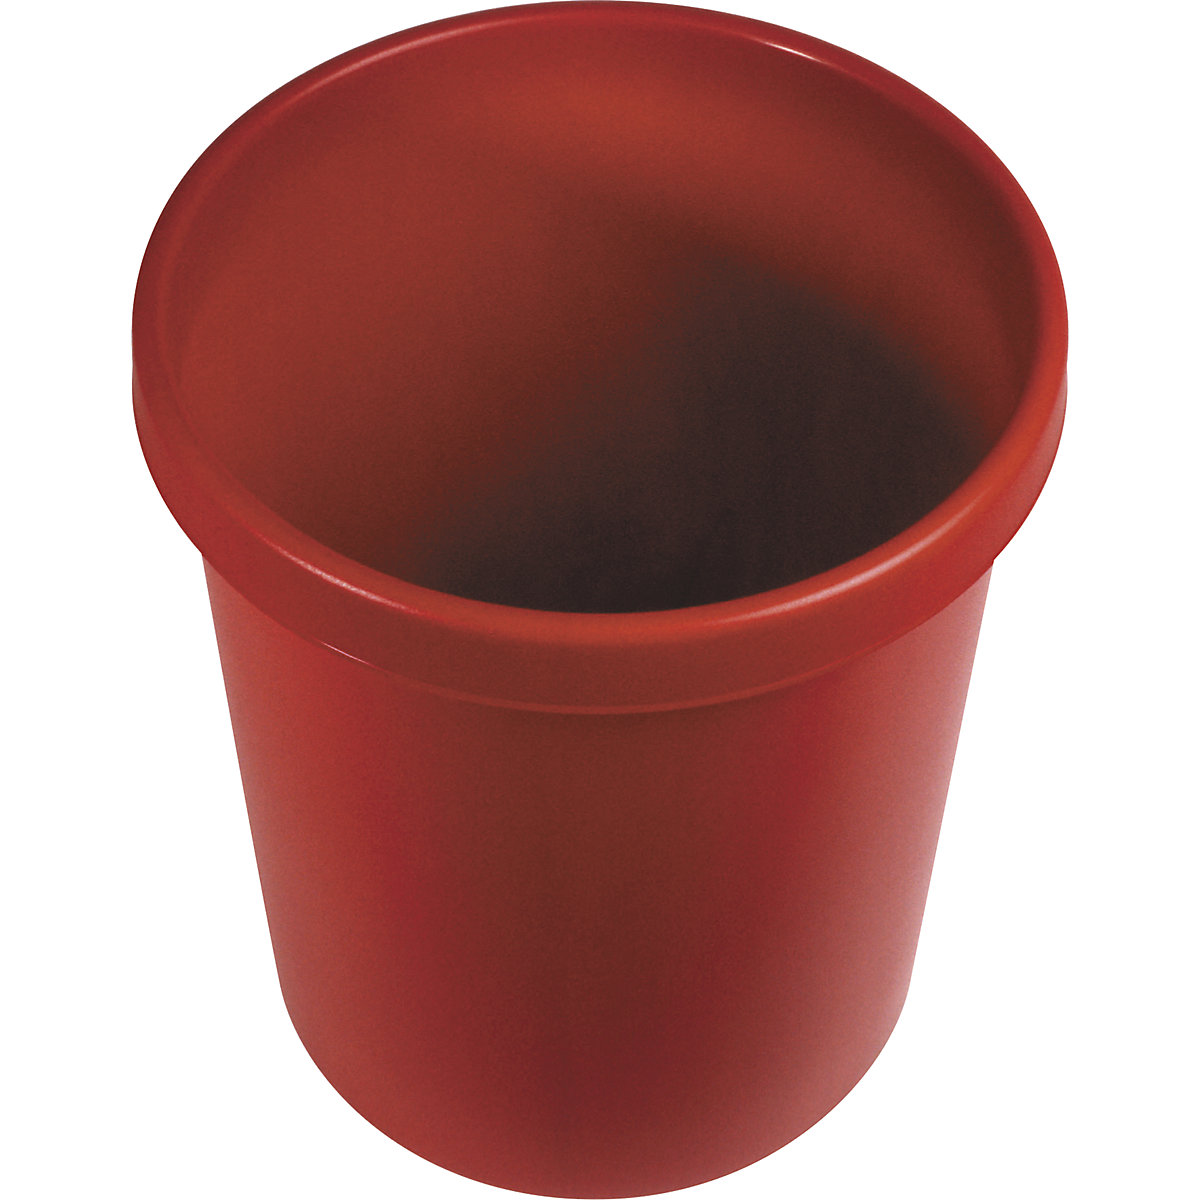 helit – Corbeille à papier en plastique, capacité 30 l, h x Ø 405 x 350 mm, rouge, lot de 5